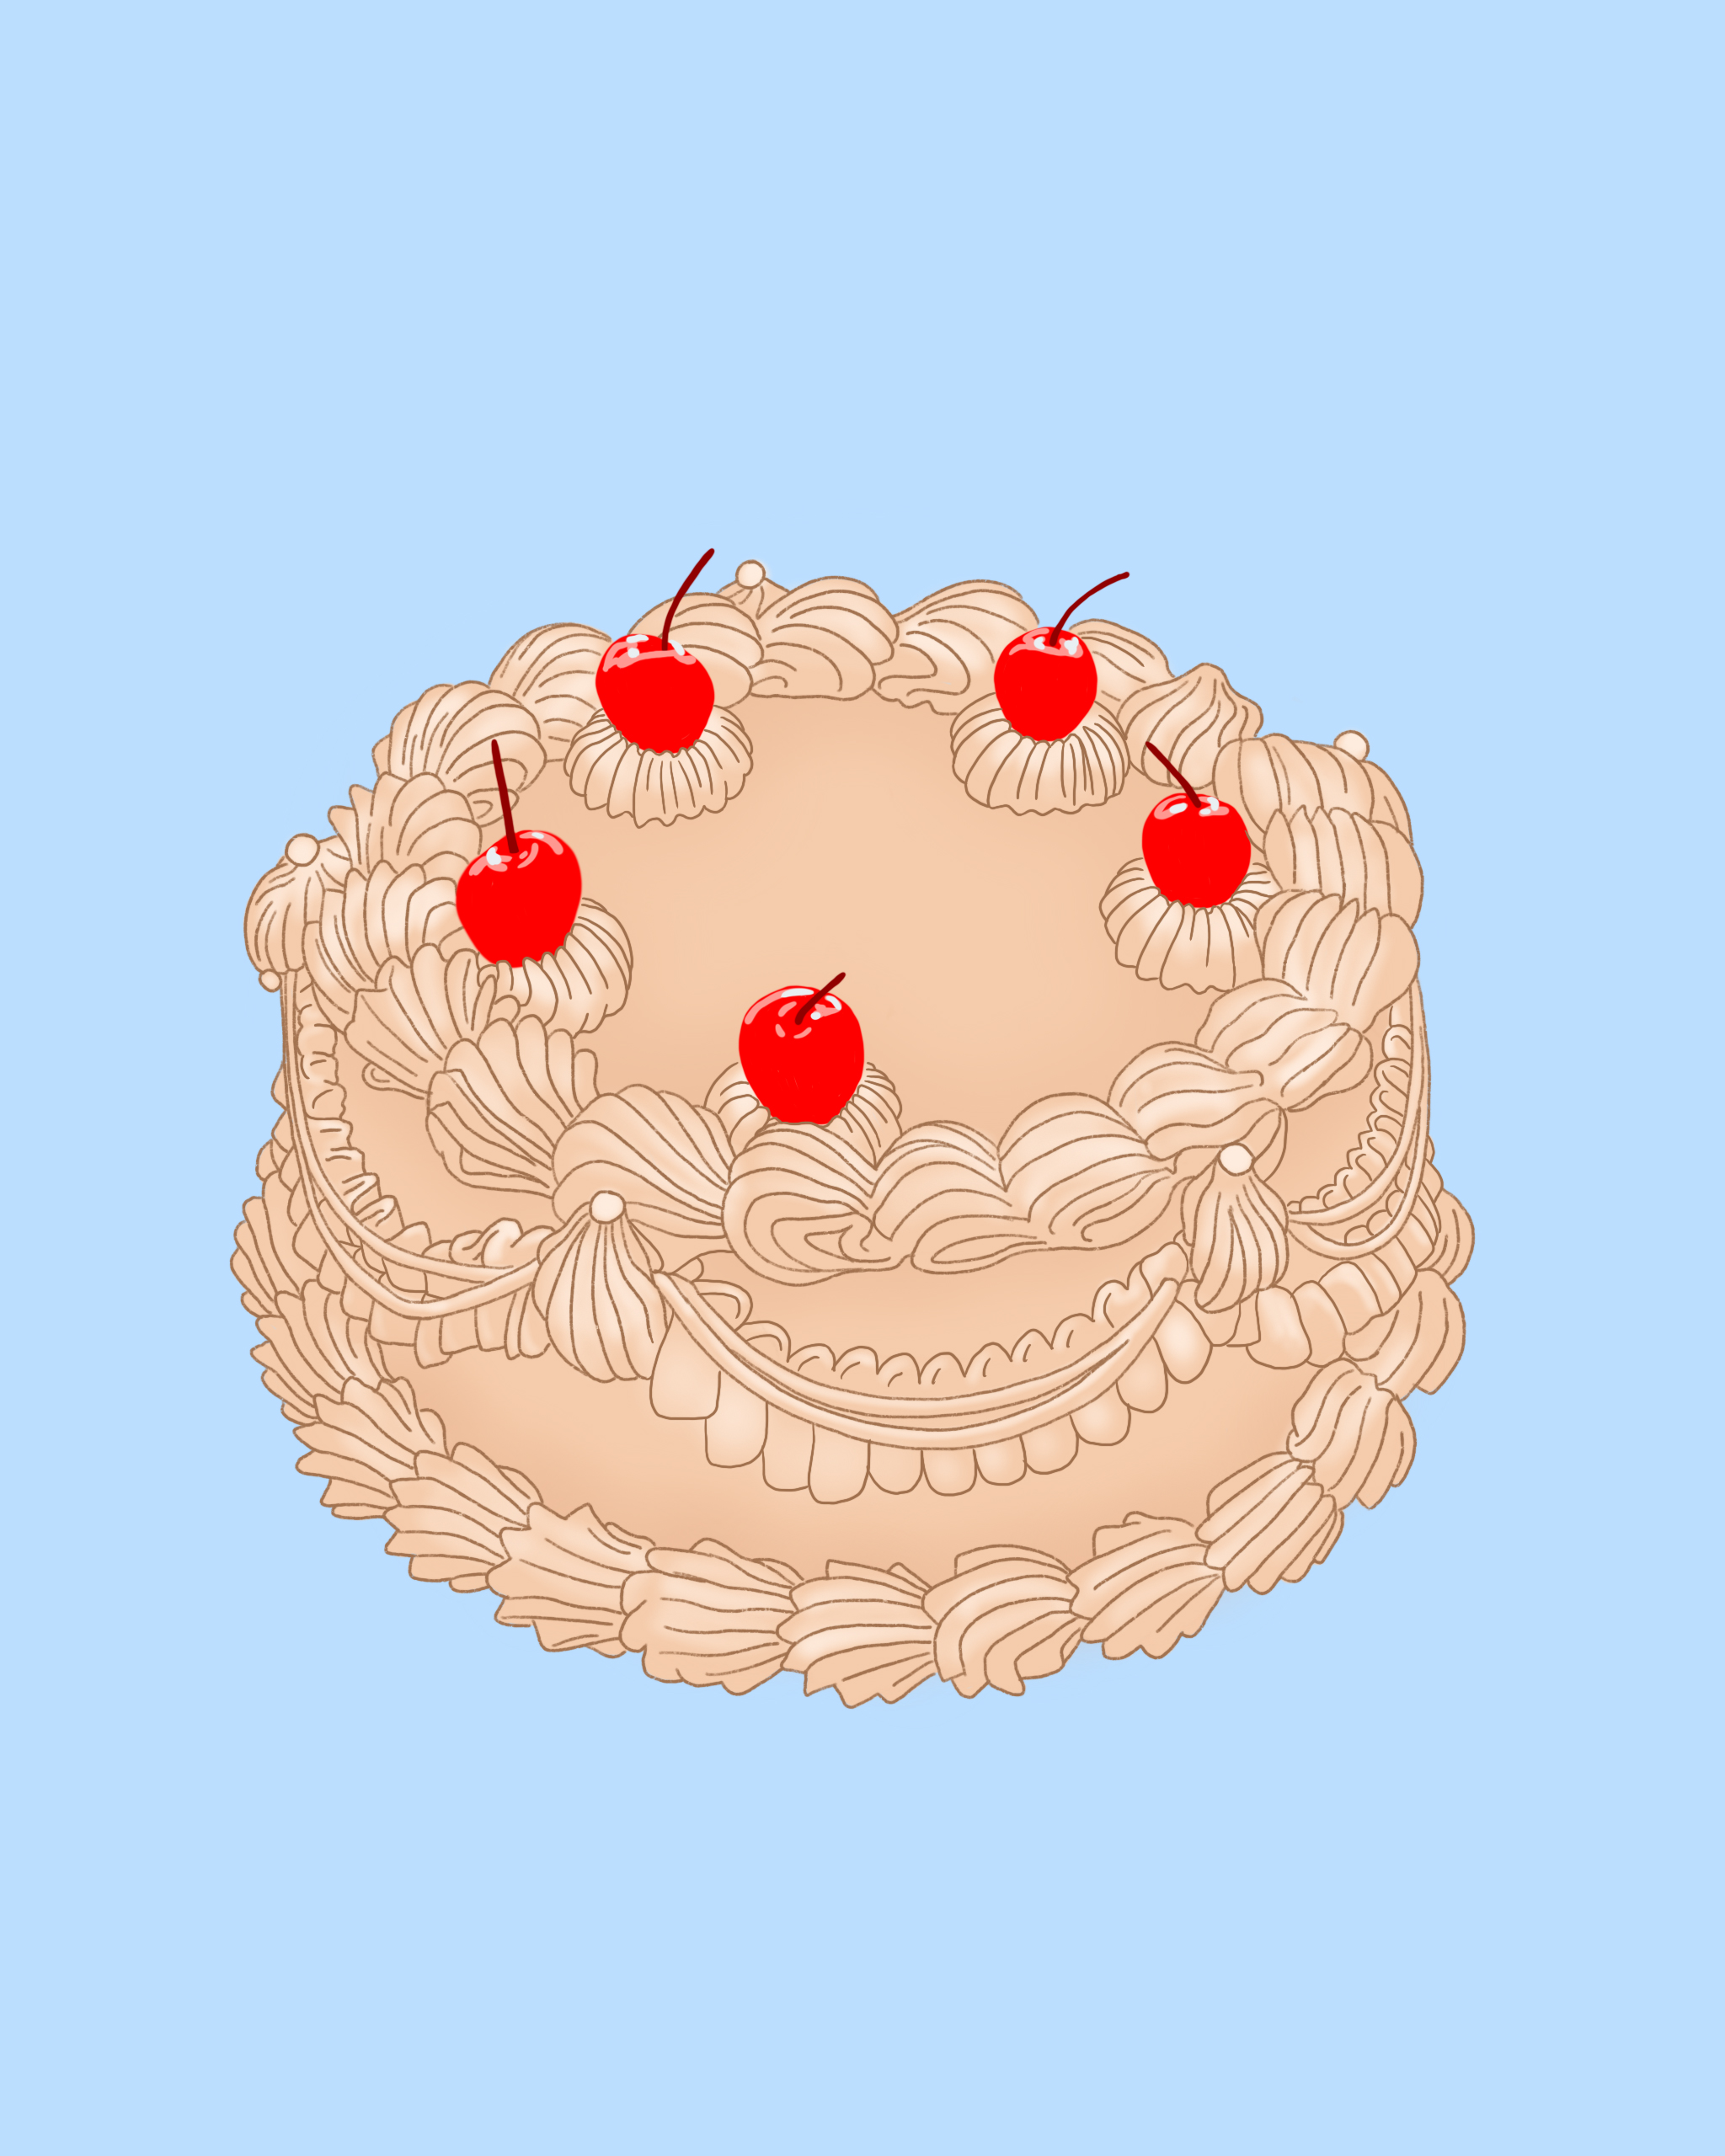 White_Cake_With_Cherries